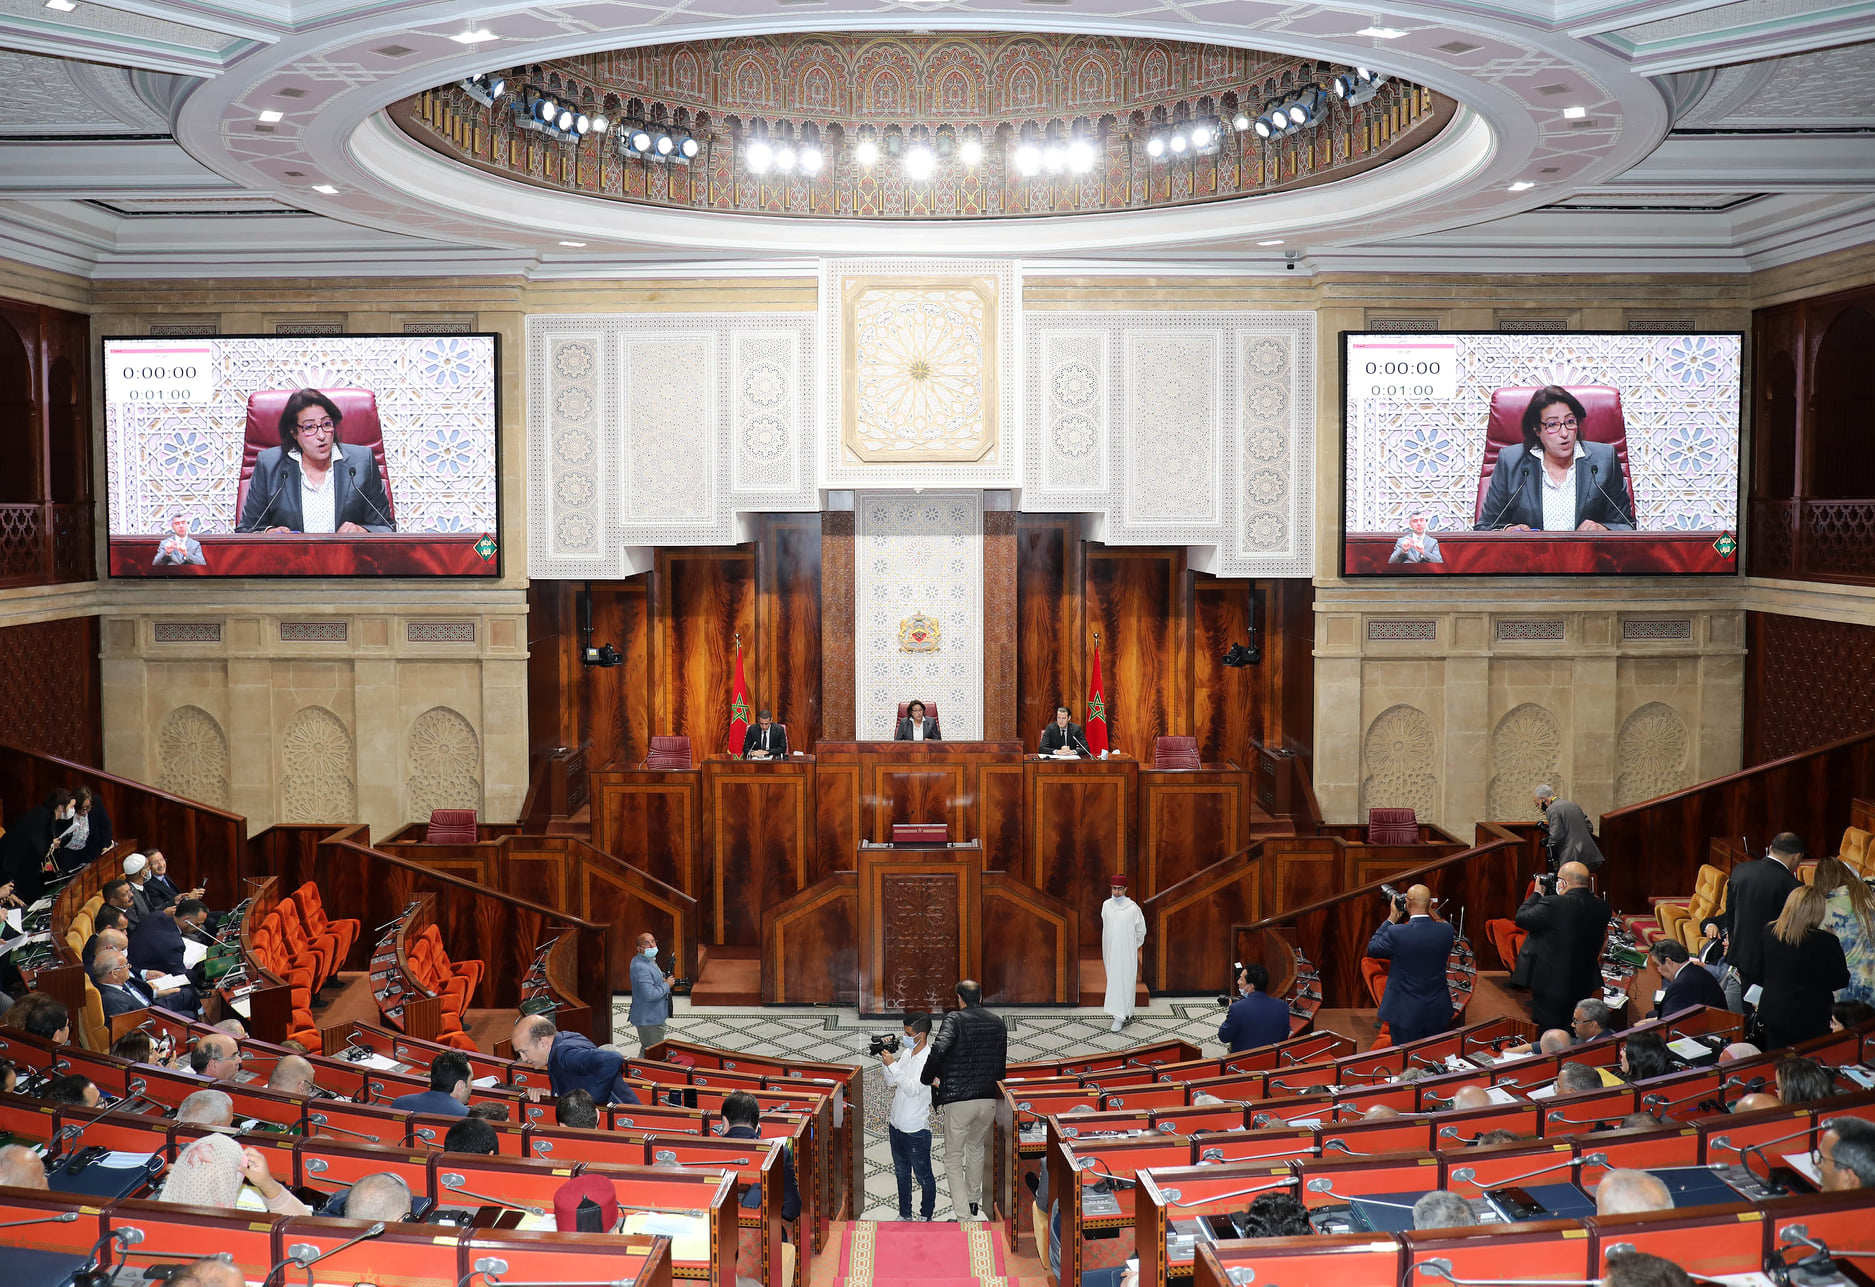 البرلمان يحتضن الأمناء العامين للبرلمانات الفرنكوفونية